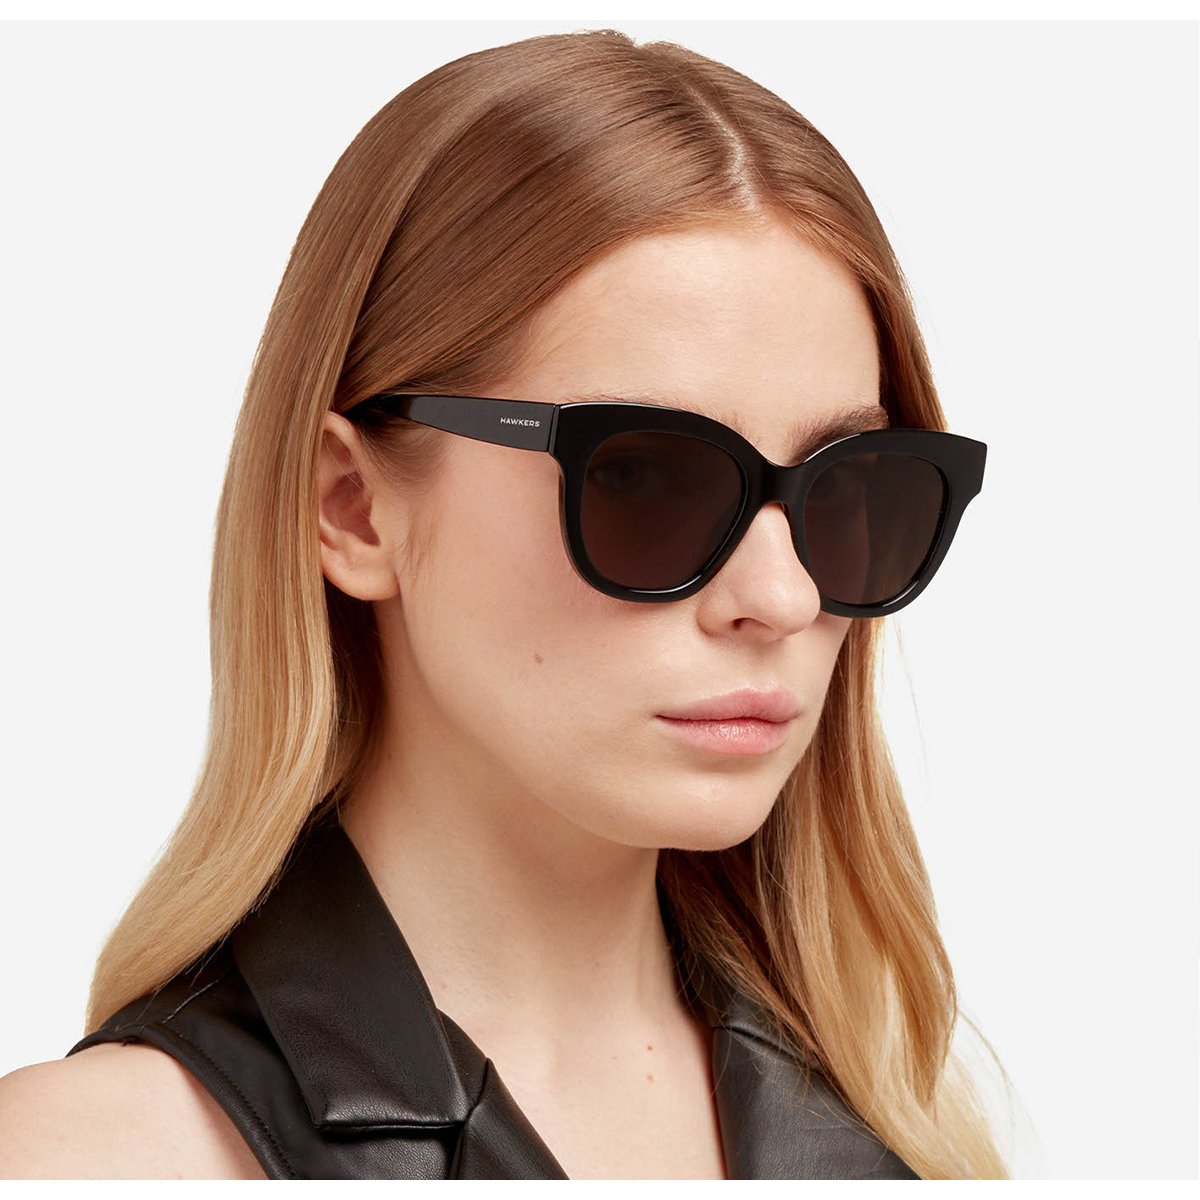 Gafas de sol - Hawkers - mujer